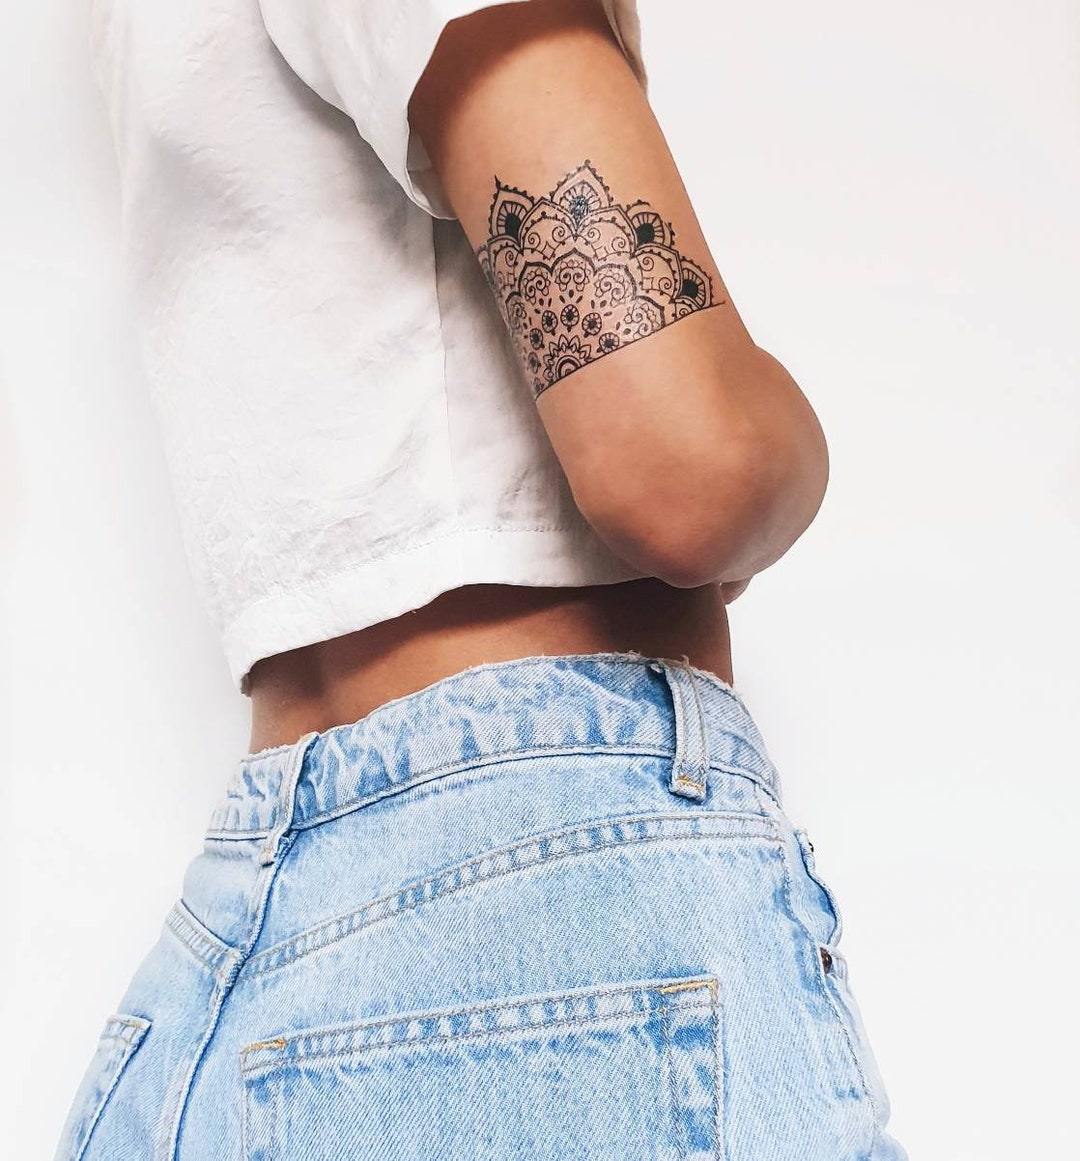 Custom Mandala wrist band tattoo by @nains_tattoos @skinmachinetattoo . # mandalatattoo #inked #skinmachinetattoo #artist #wristbandtattoo | Instagram